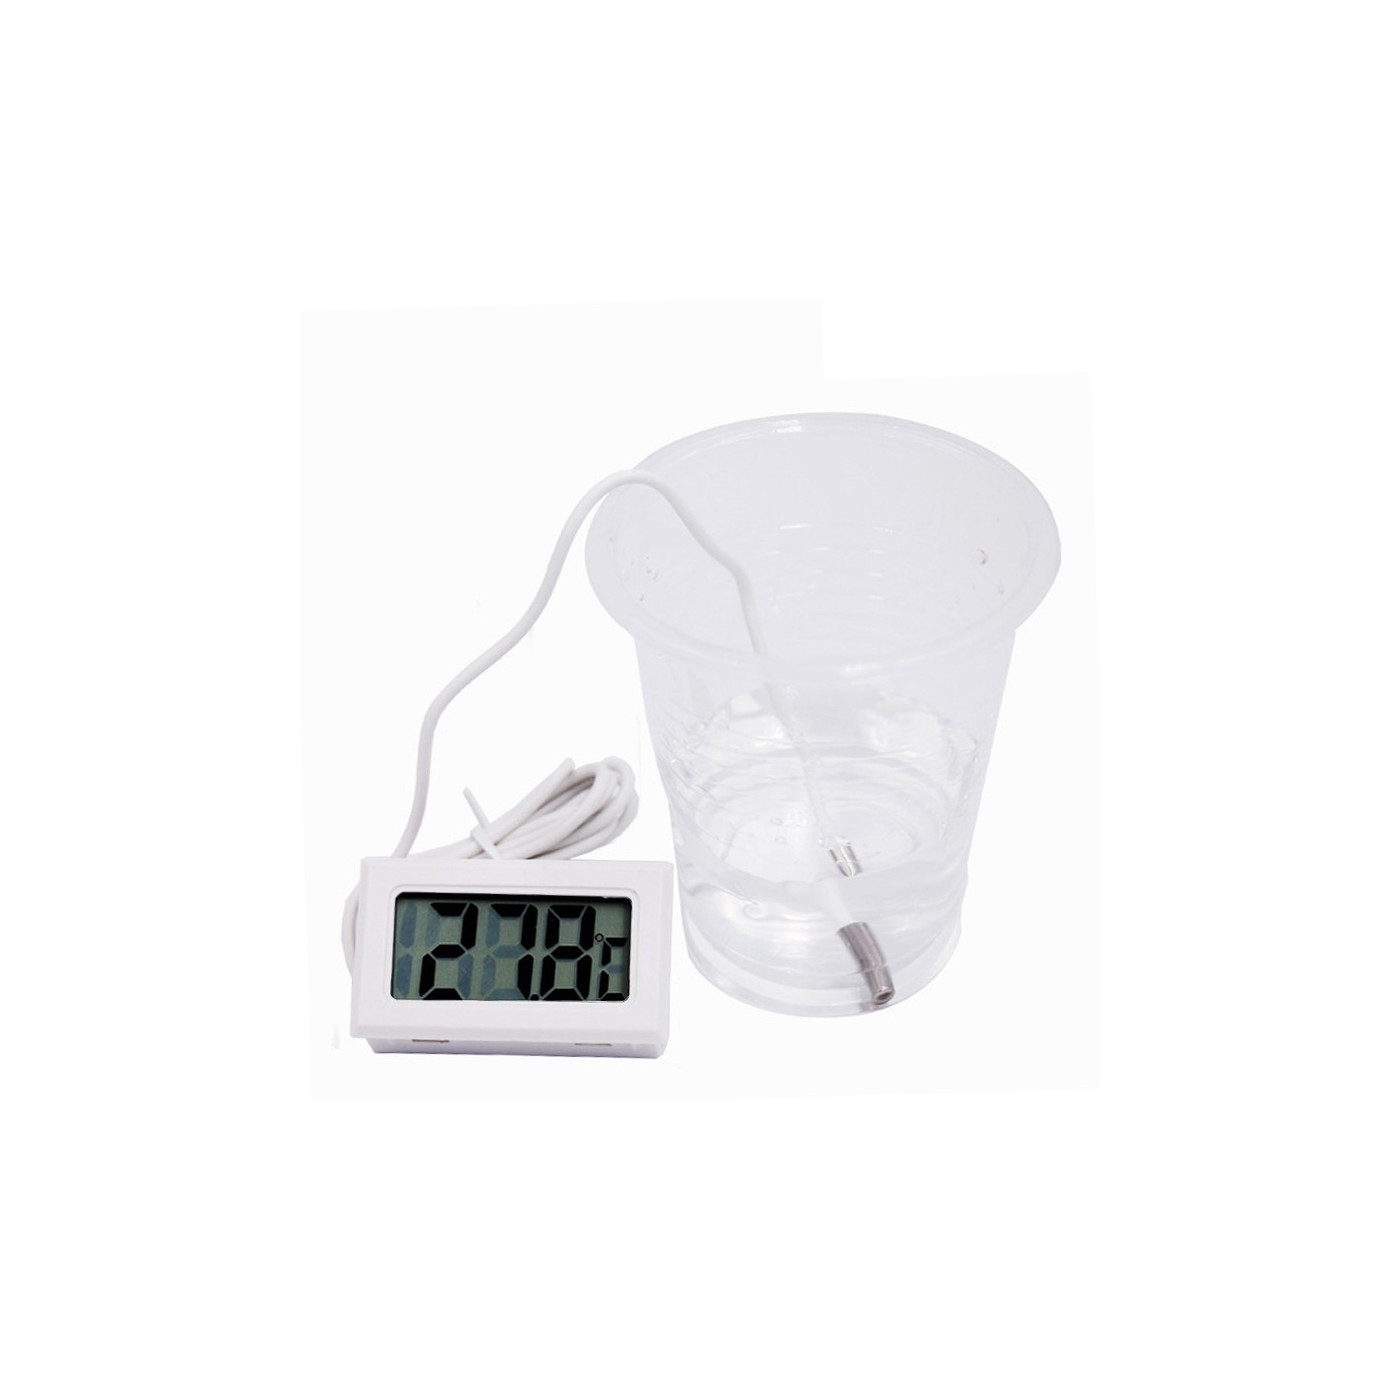 Weißes LCD-Thermometer mit Sonde (für Aquarium, etc.)